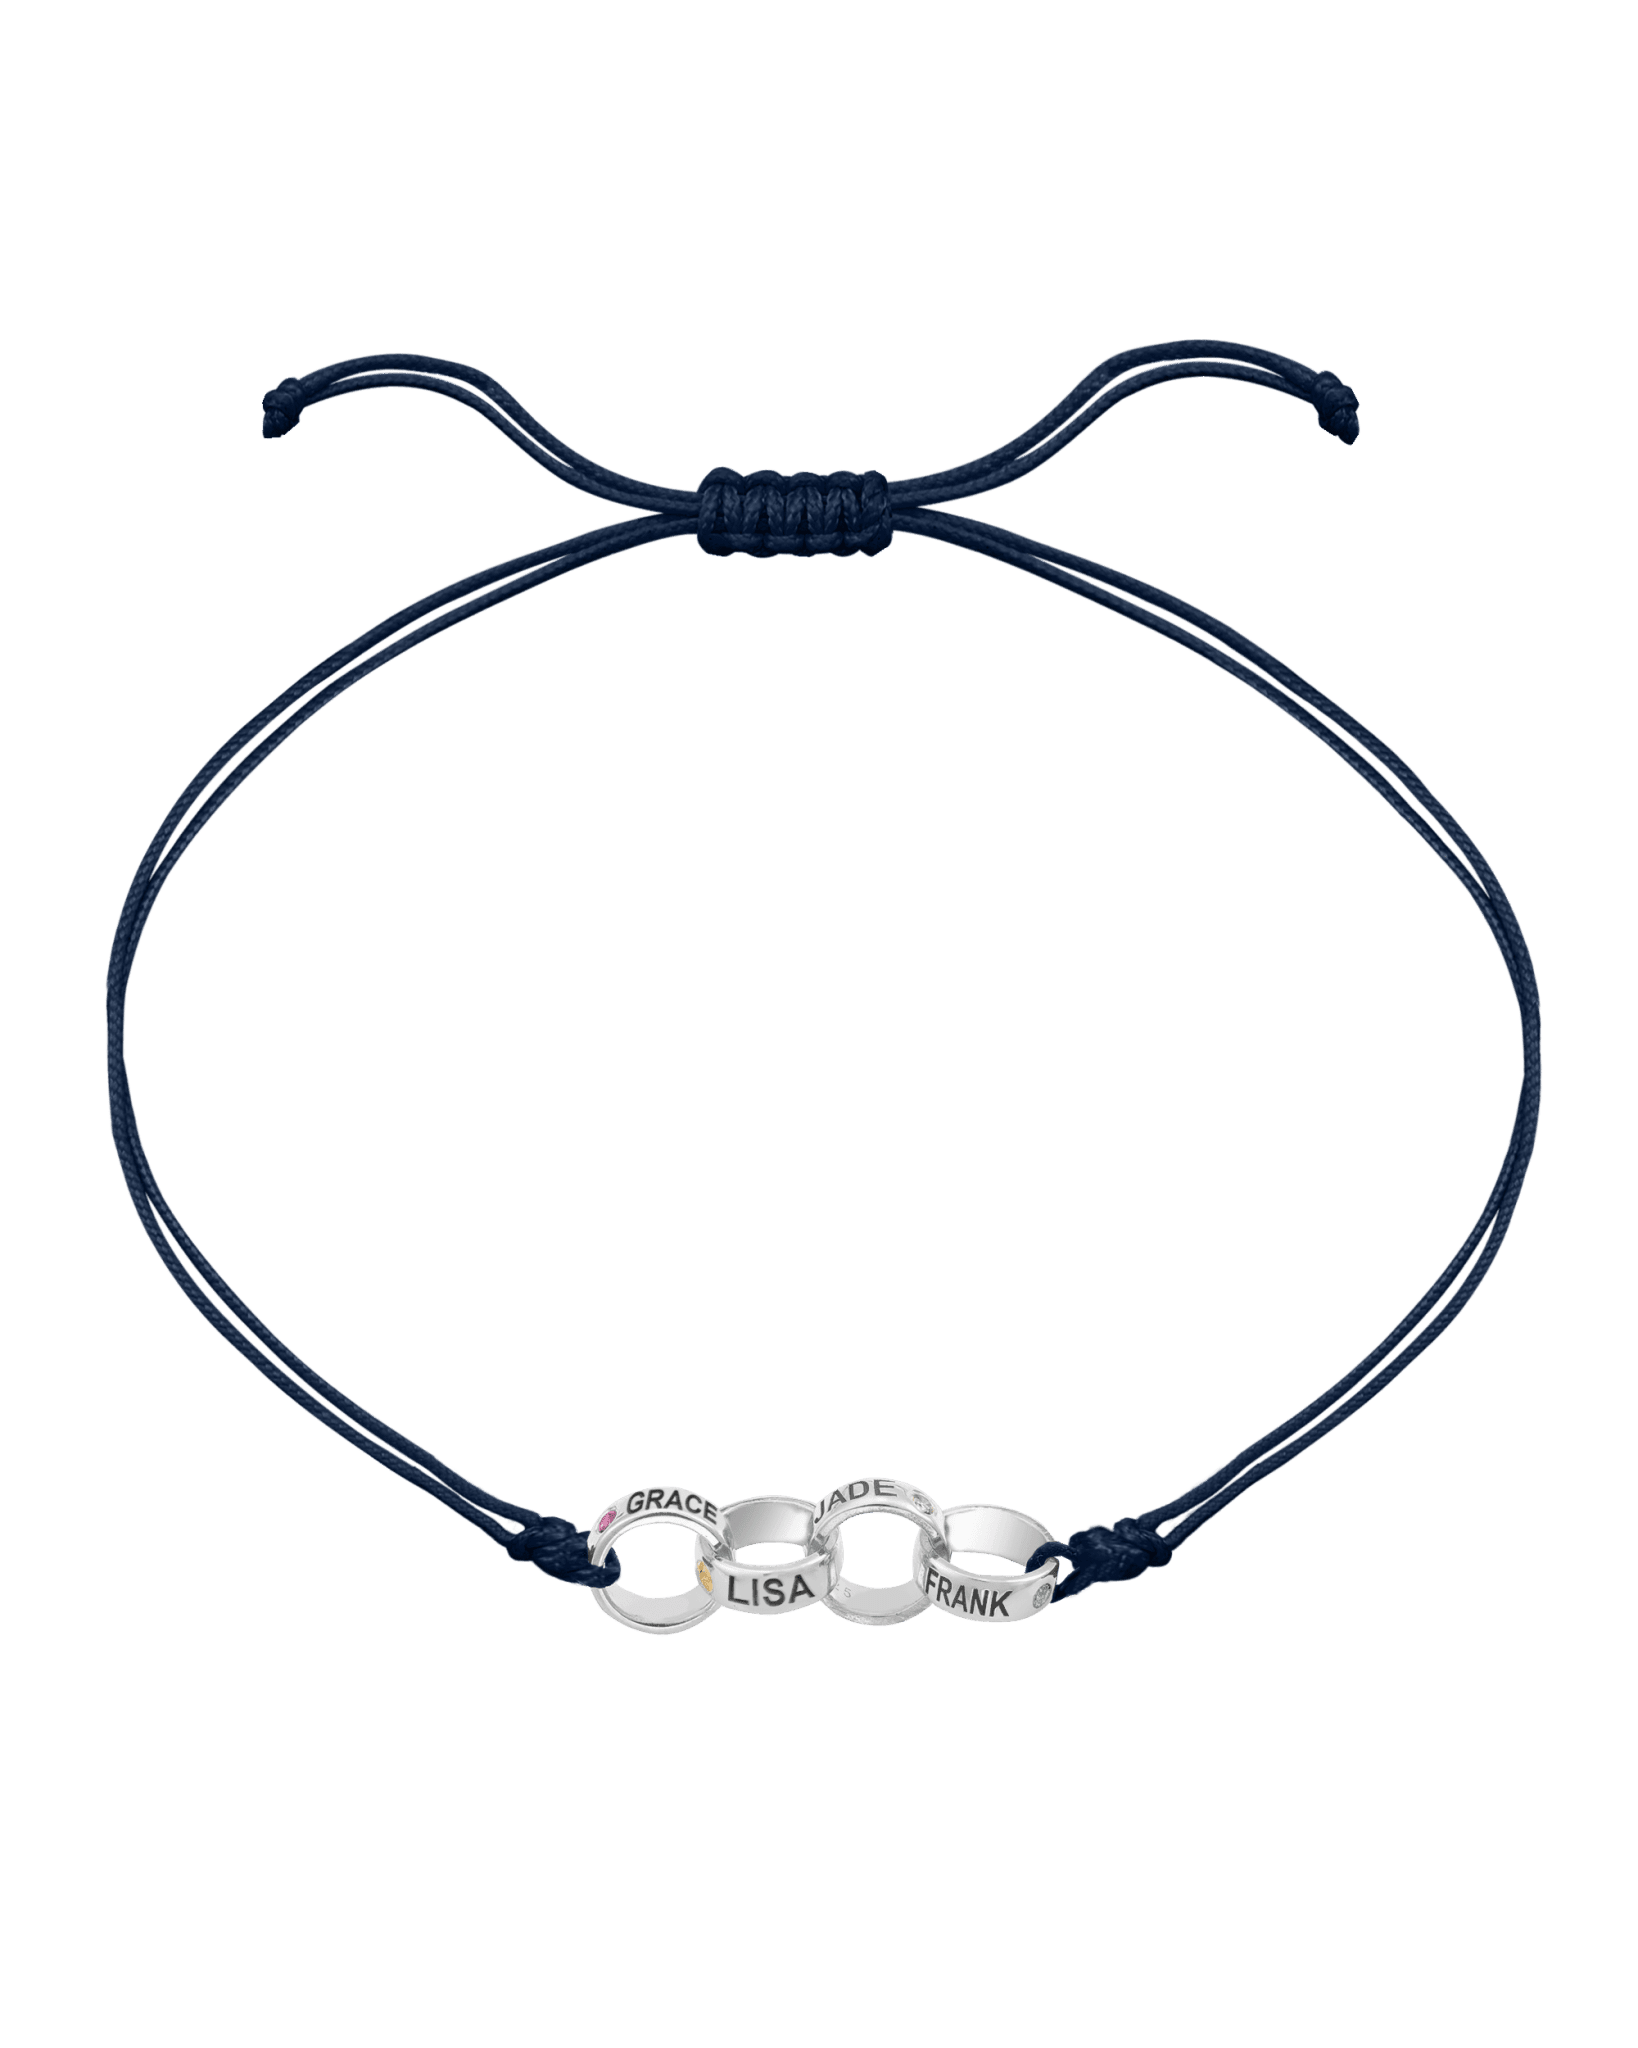 Engravable Links of Love - 925 Sterling Silver Bracelets magal-dev 4 Navy Blue 